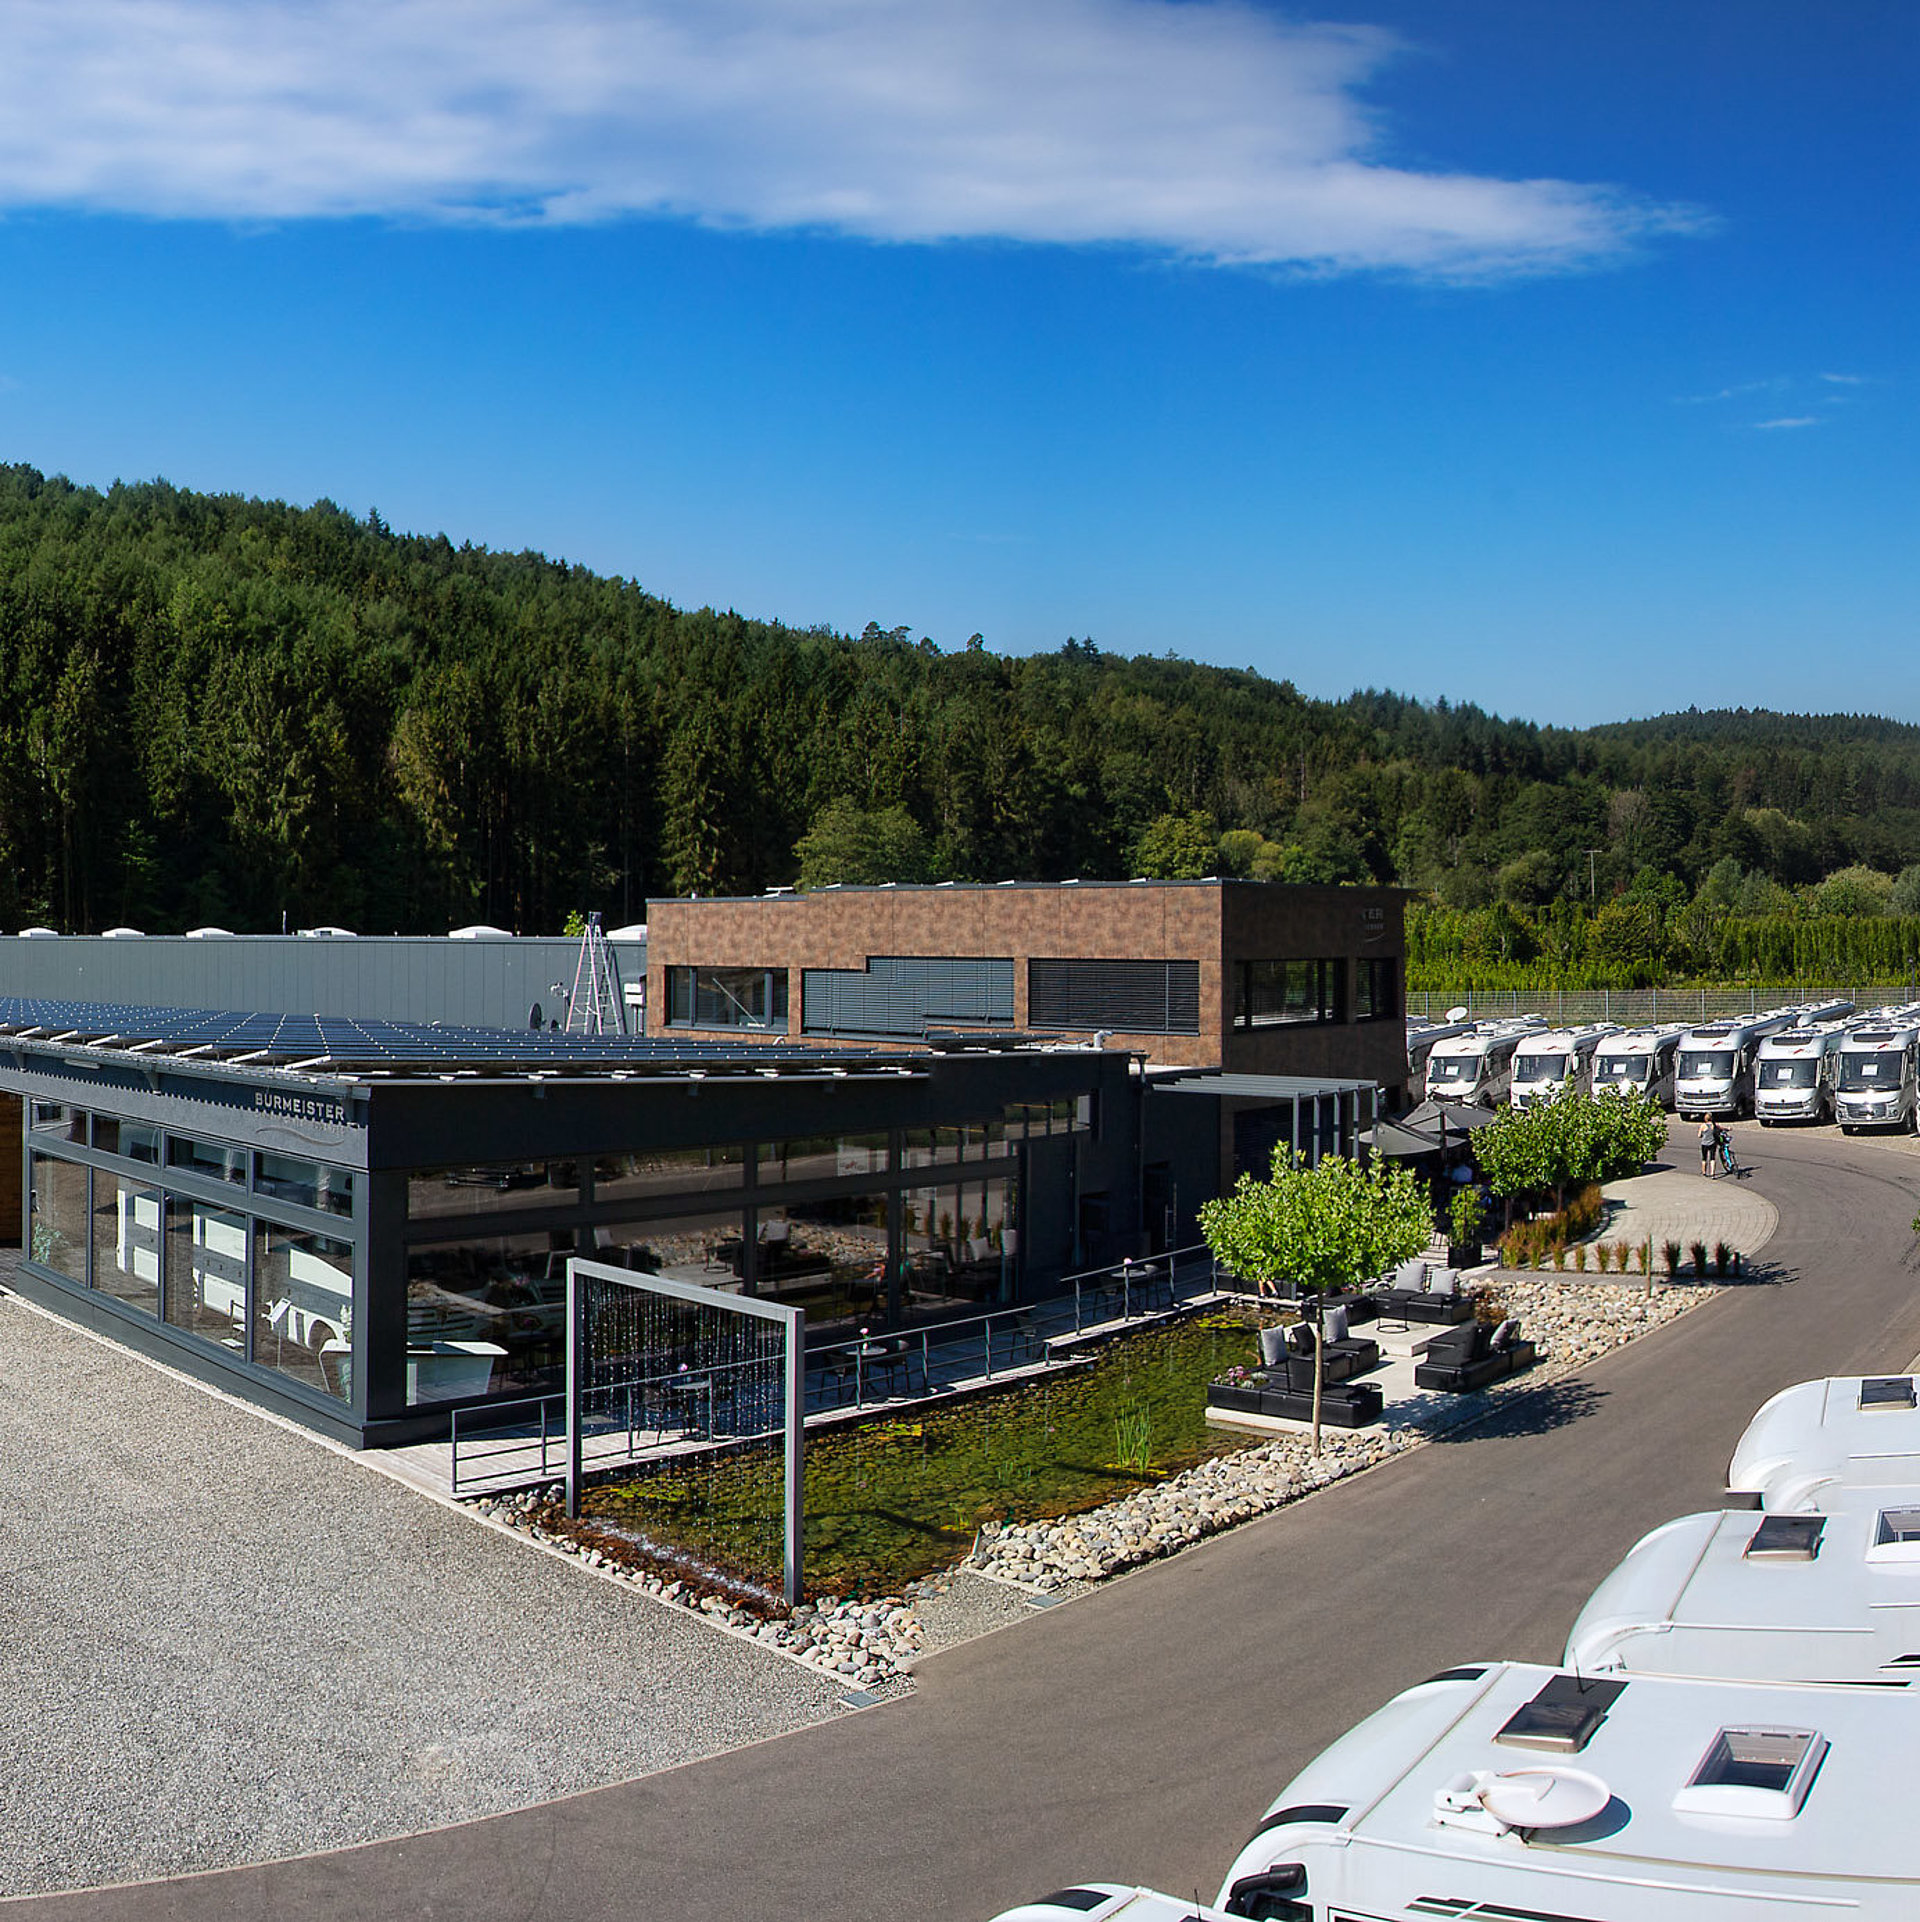 Burmeister Caravan Center am Bodensee - Wohnmobile und Wohnwagen kaufen sowie mieten